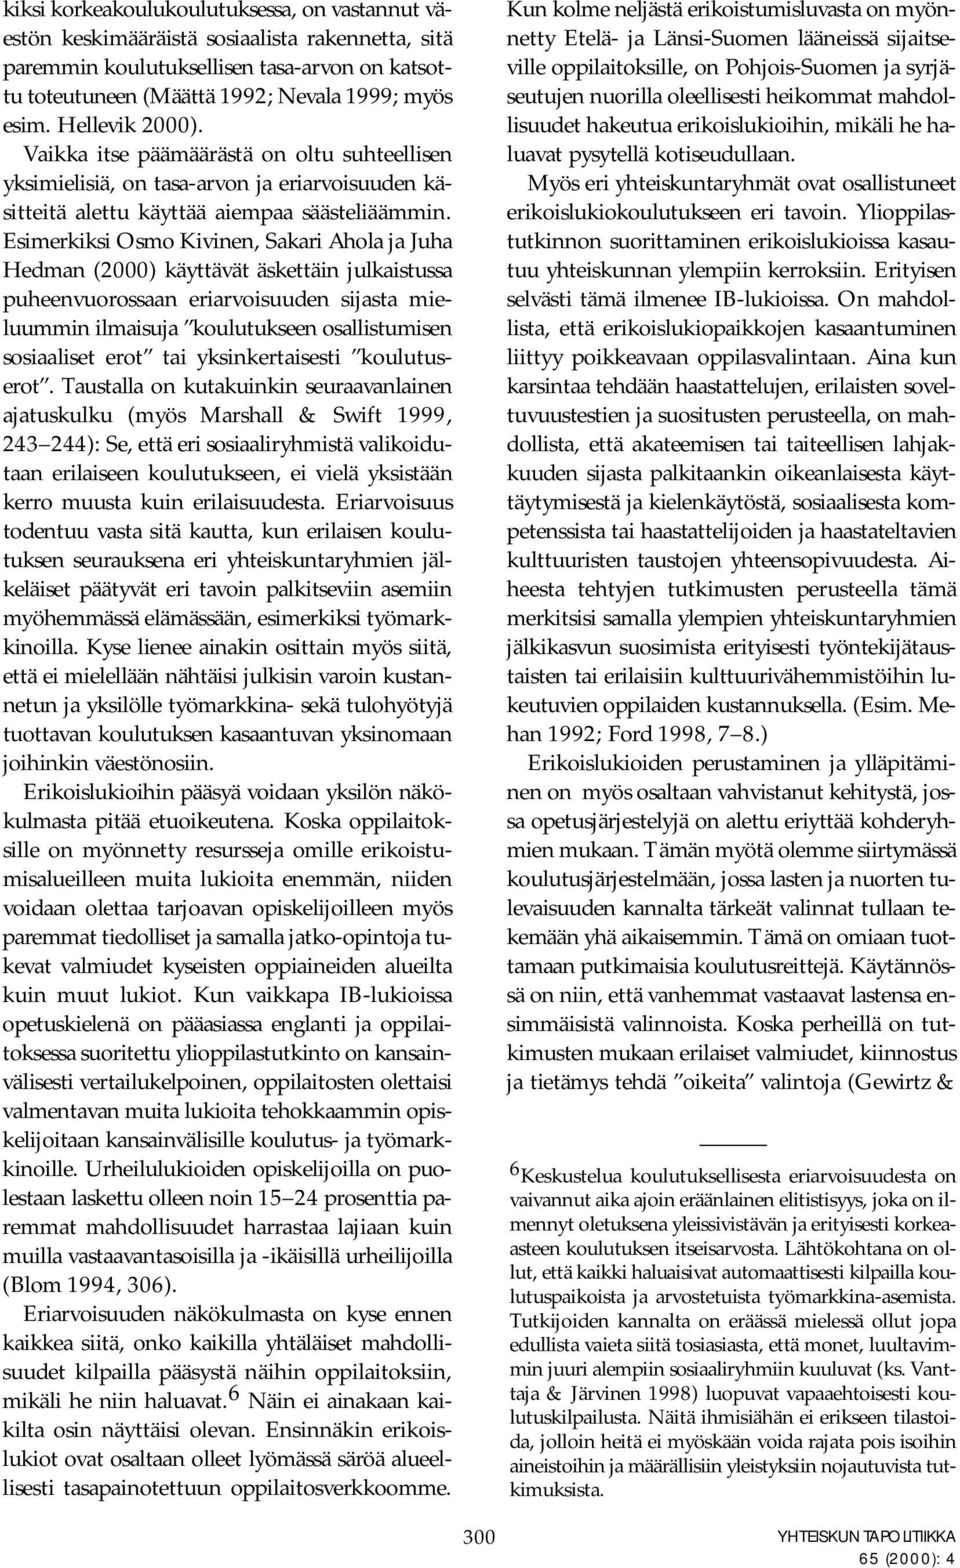 Esimerkiksi Osmo Kivinen, Sakari Ahola ja Juha Hedman (2000) käyttävät äskettäin julkaistussa puheenvuorossaan eriarvoisuuden sijasta mieluummin ilmaisuja koulutukseen osallistumisen sosiaaliset erot